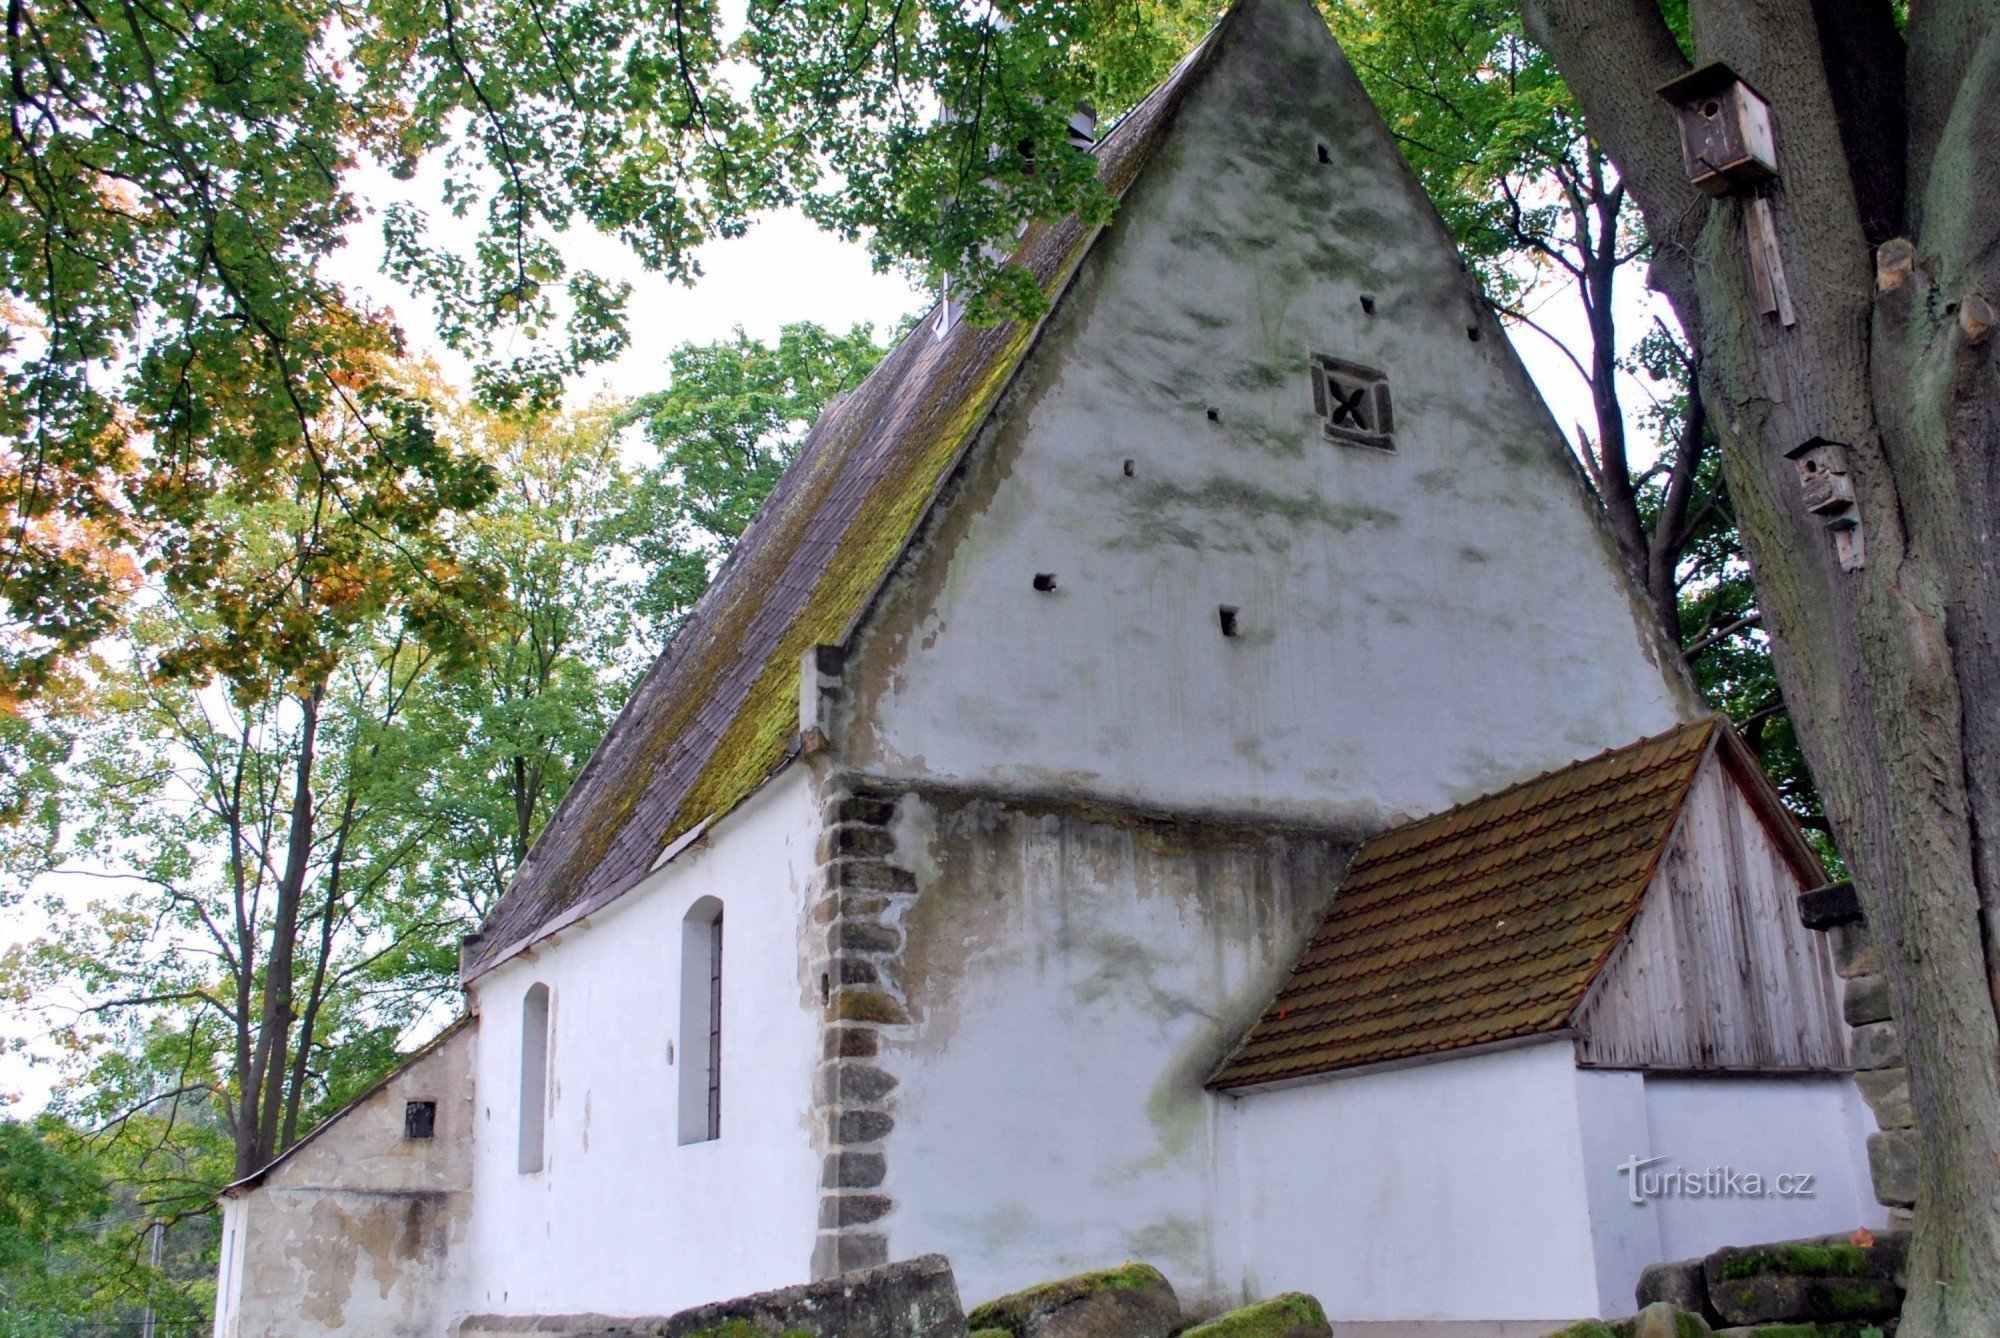 Hostíkovice - das älteste Sakralgebäude in Českolipsk